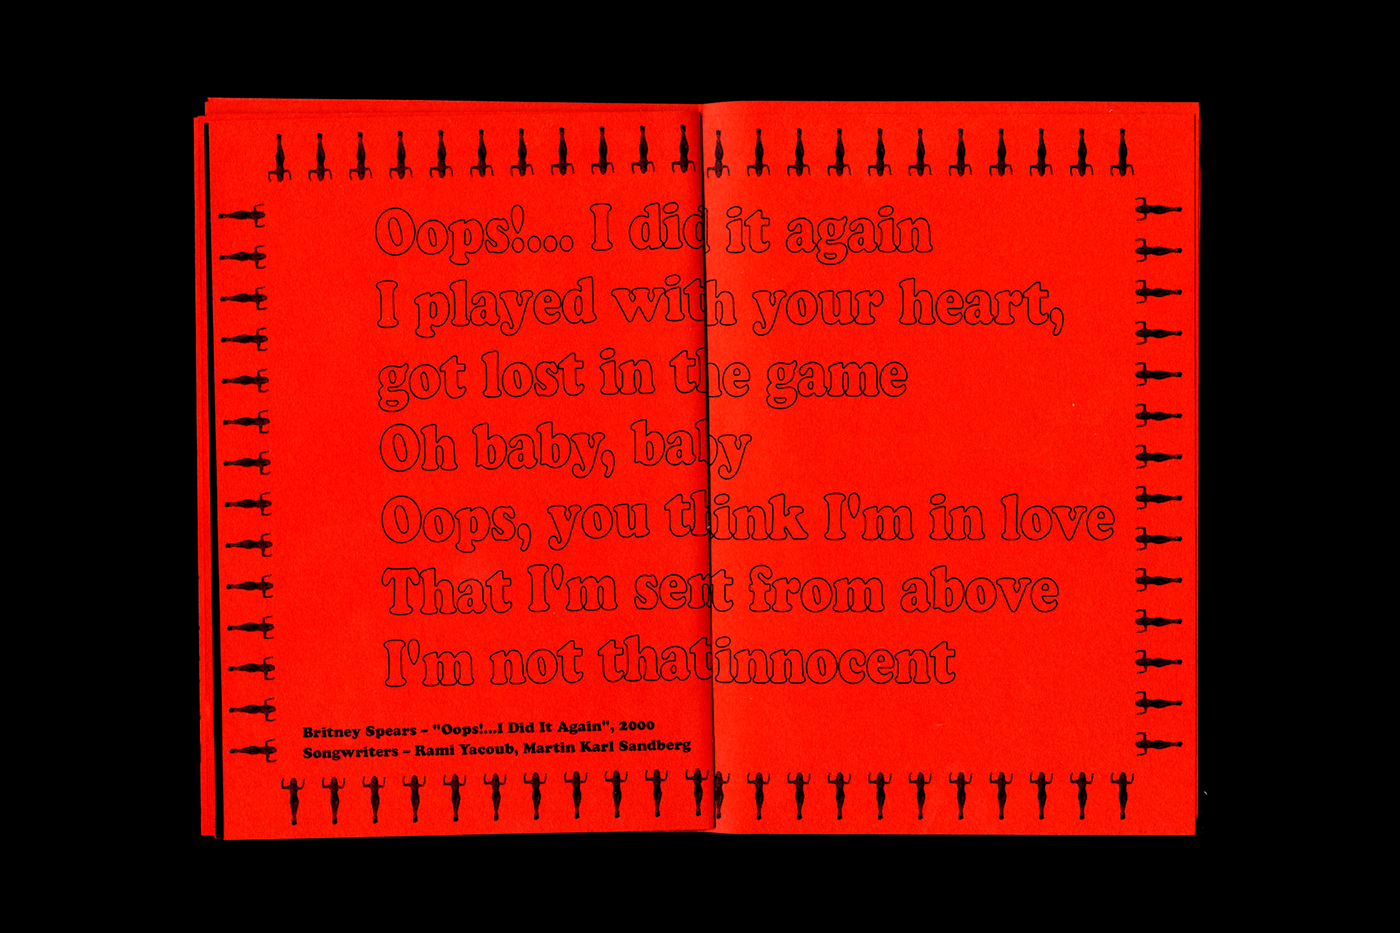 katamoravszki moravszki britney spears Zine  scan music Lyrics latex black